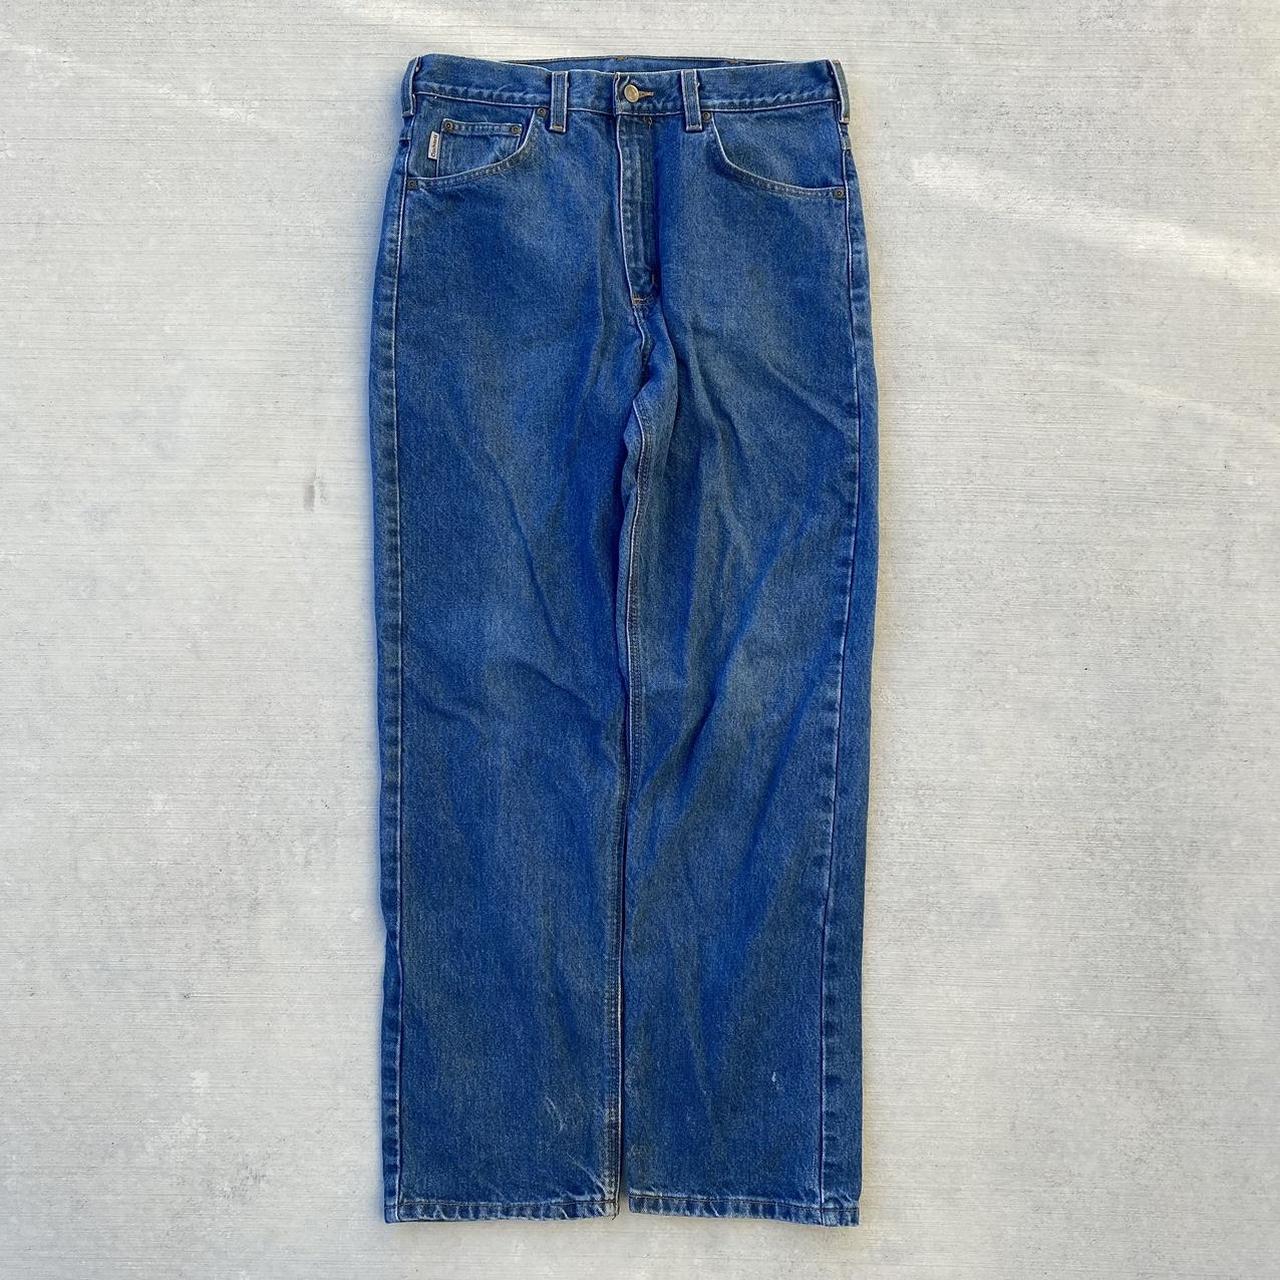 Carhartt jeans 34x32 Offer!* - Depop